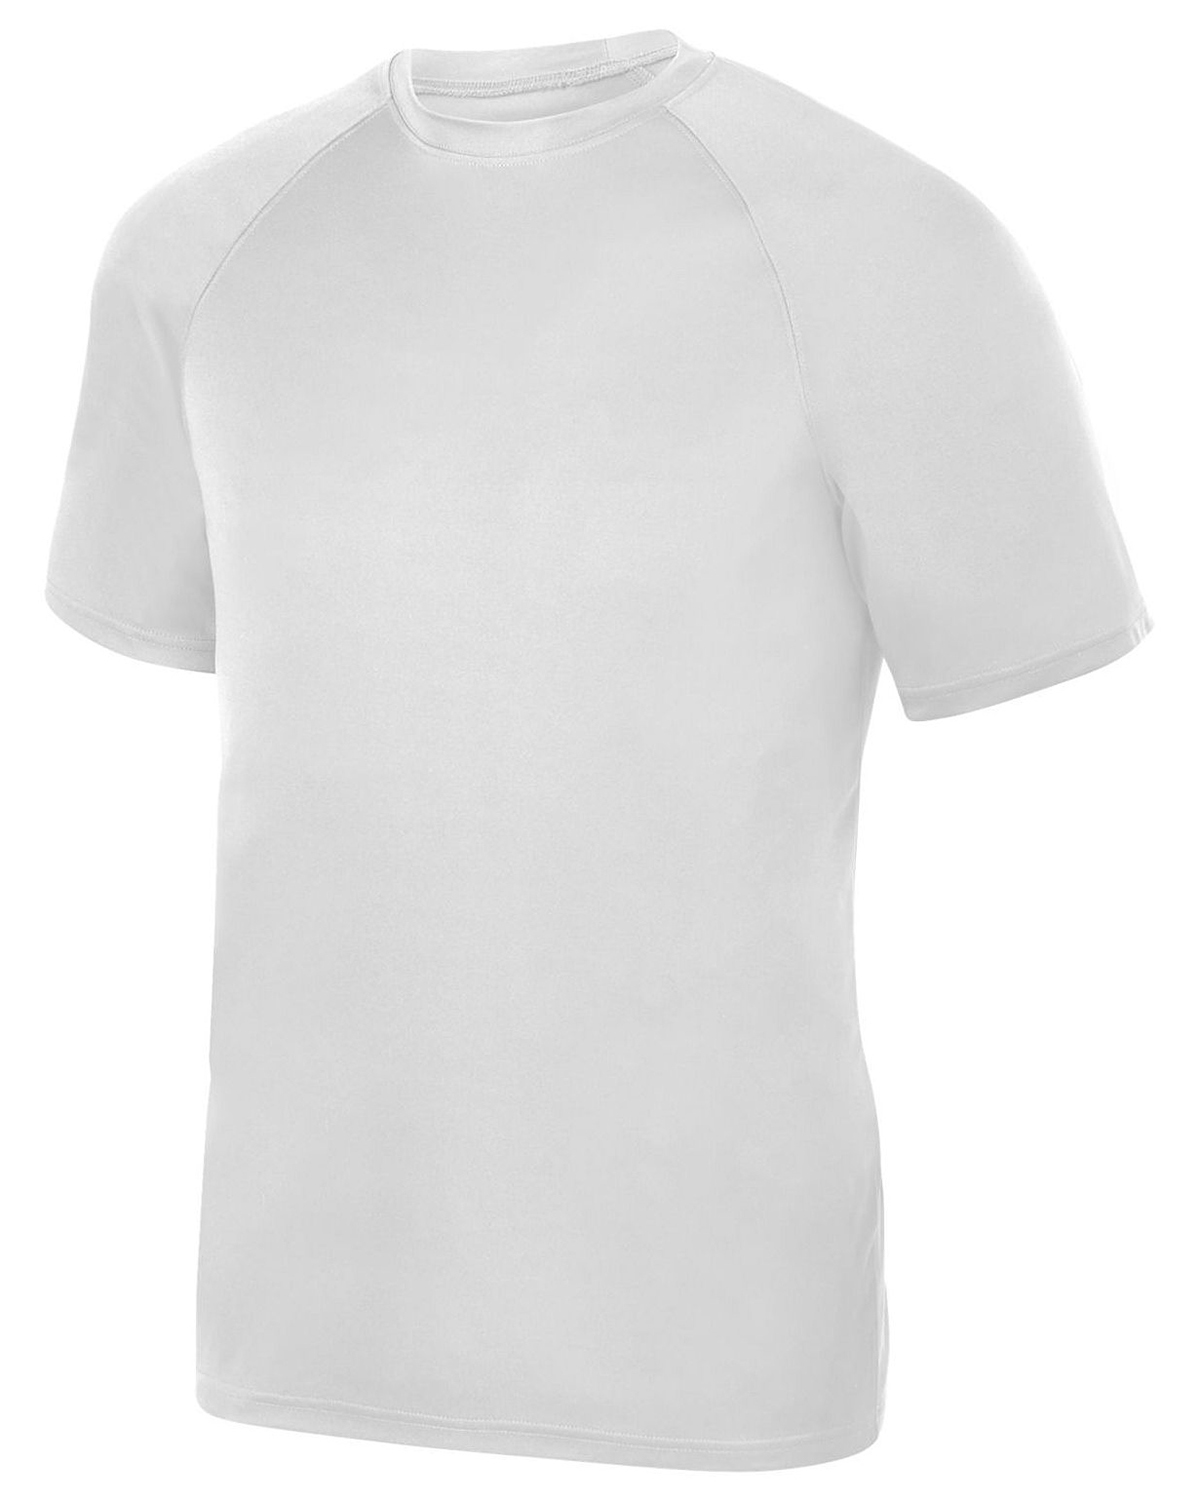 Augusta Sportswear 2790 - Men's Attain Wicking Shirt